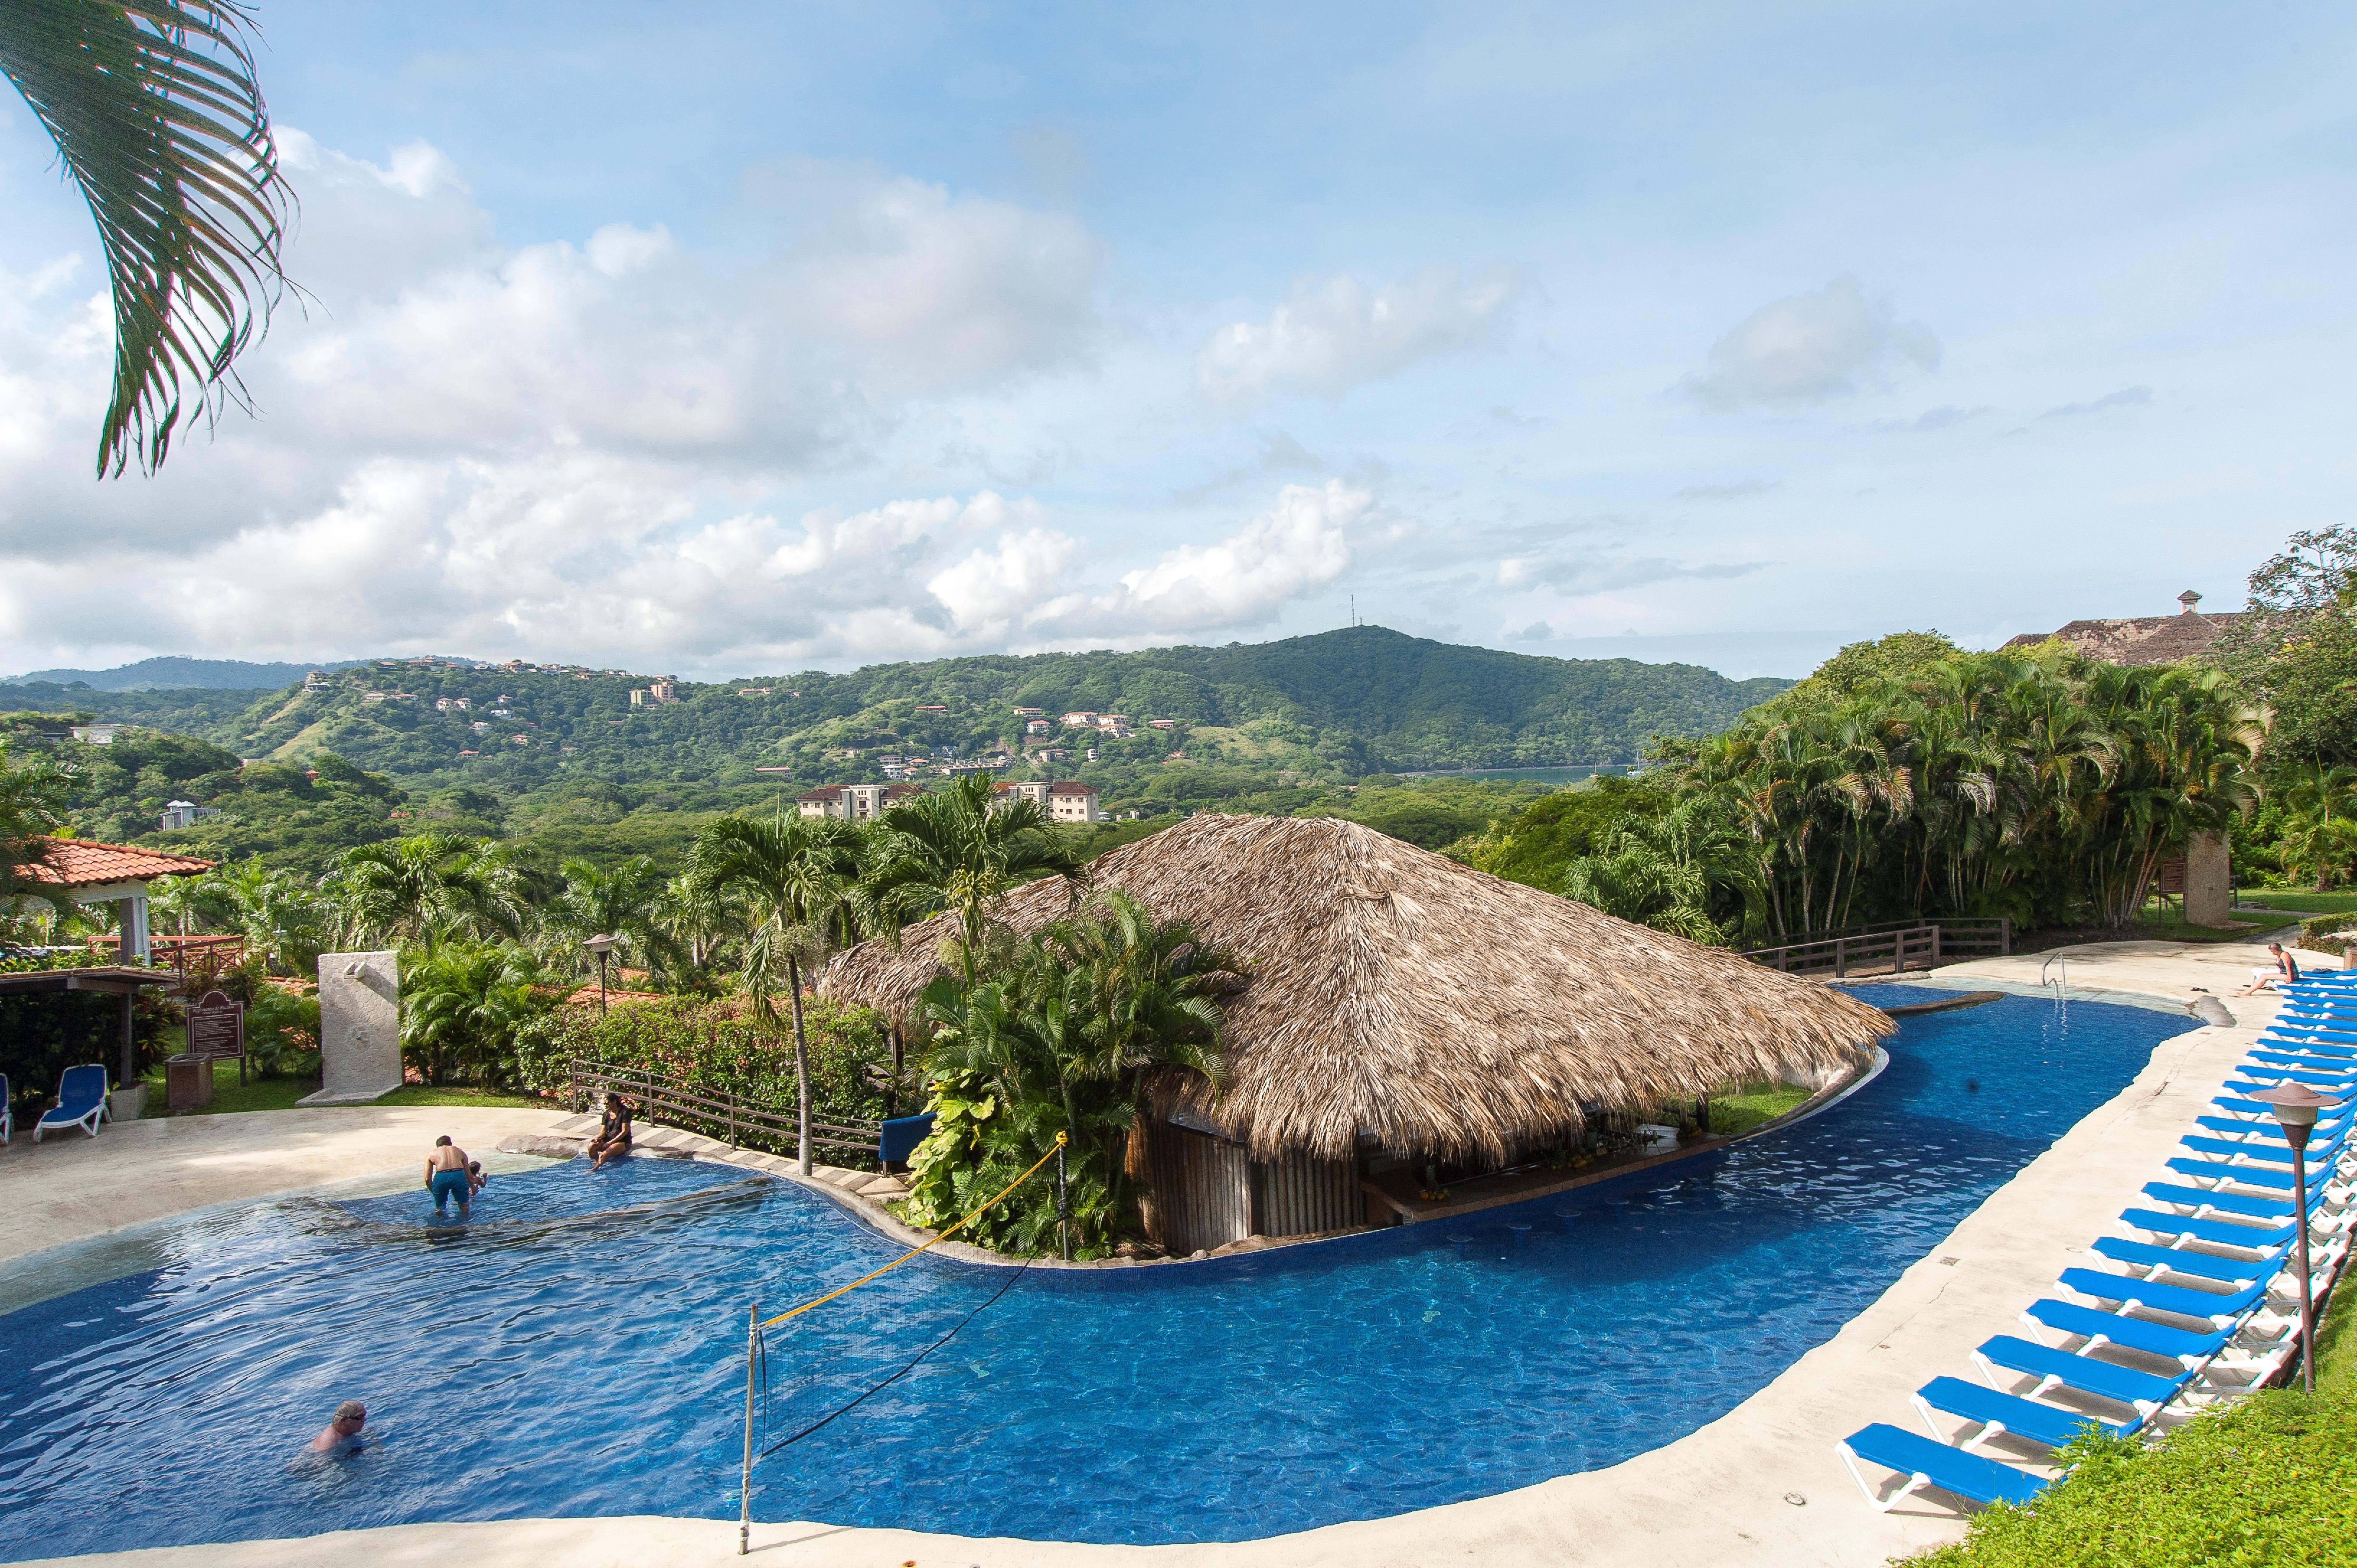 Costa Rica All Inclusive Hotel Resort Guide